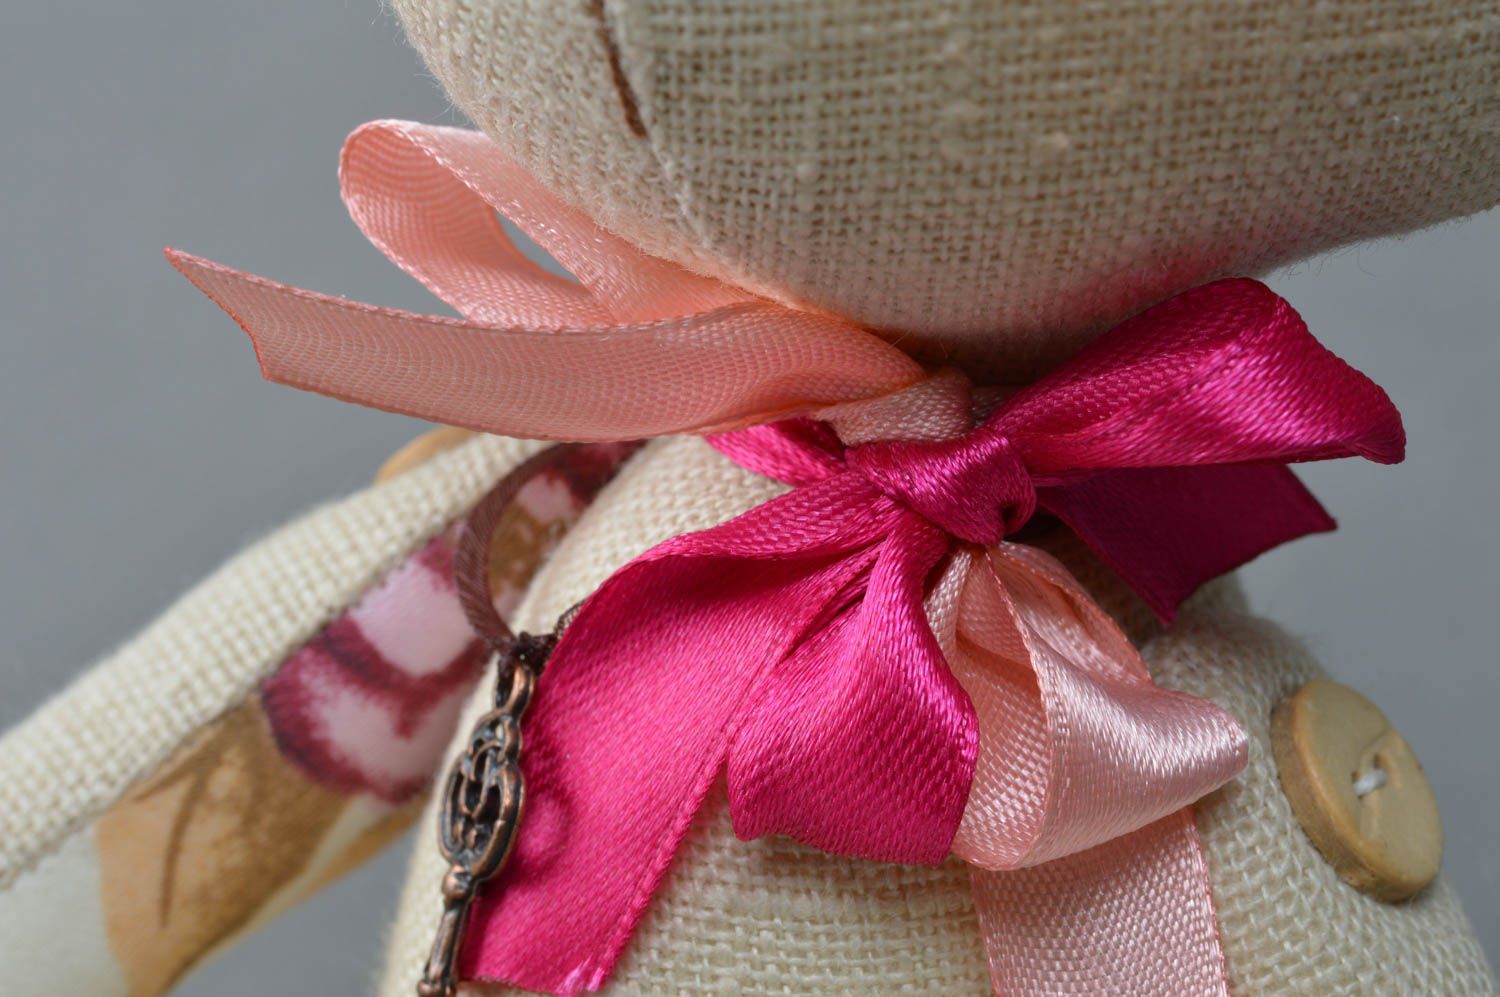 Текстильная игрушка в виде медвежонка из льна и сатина ручной работы мягкая красивая фото 2